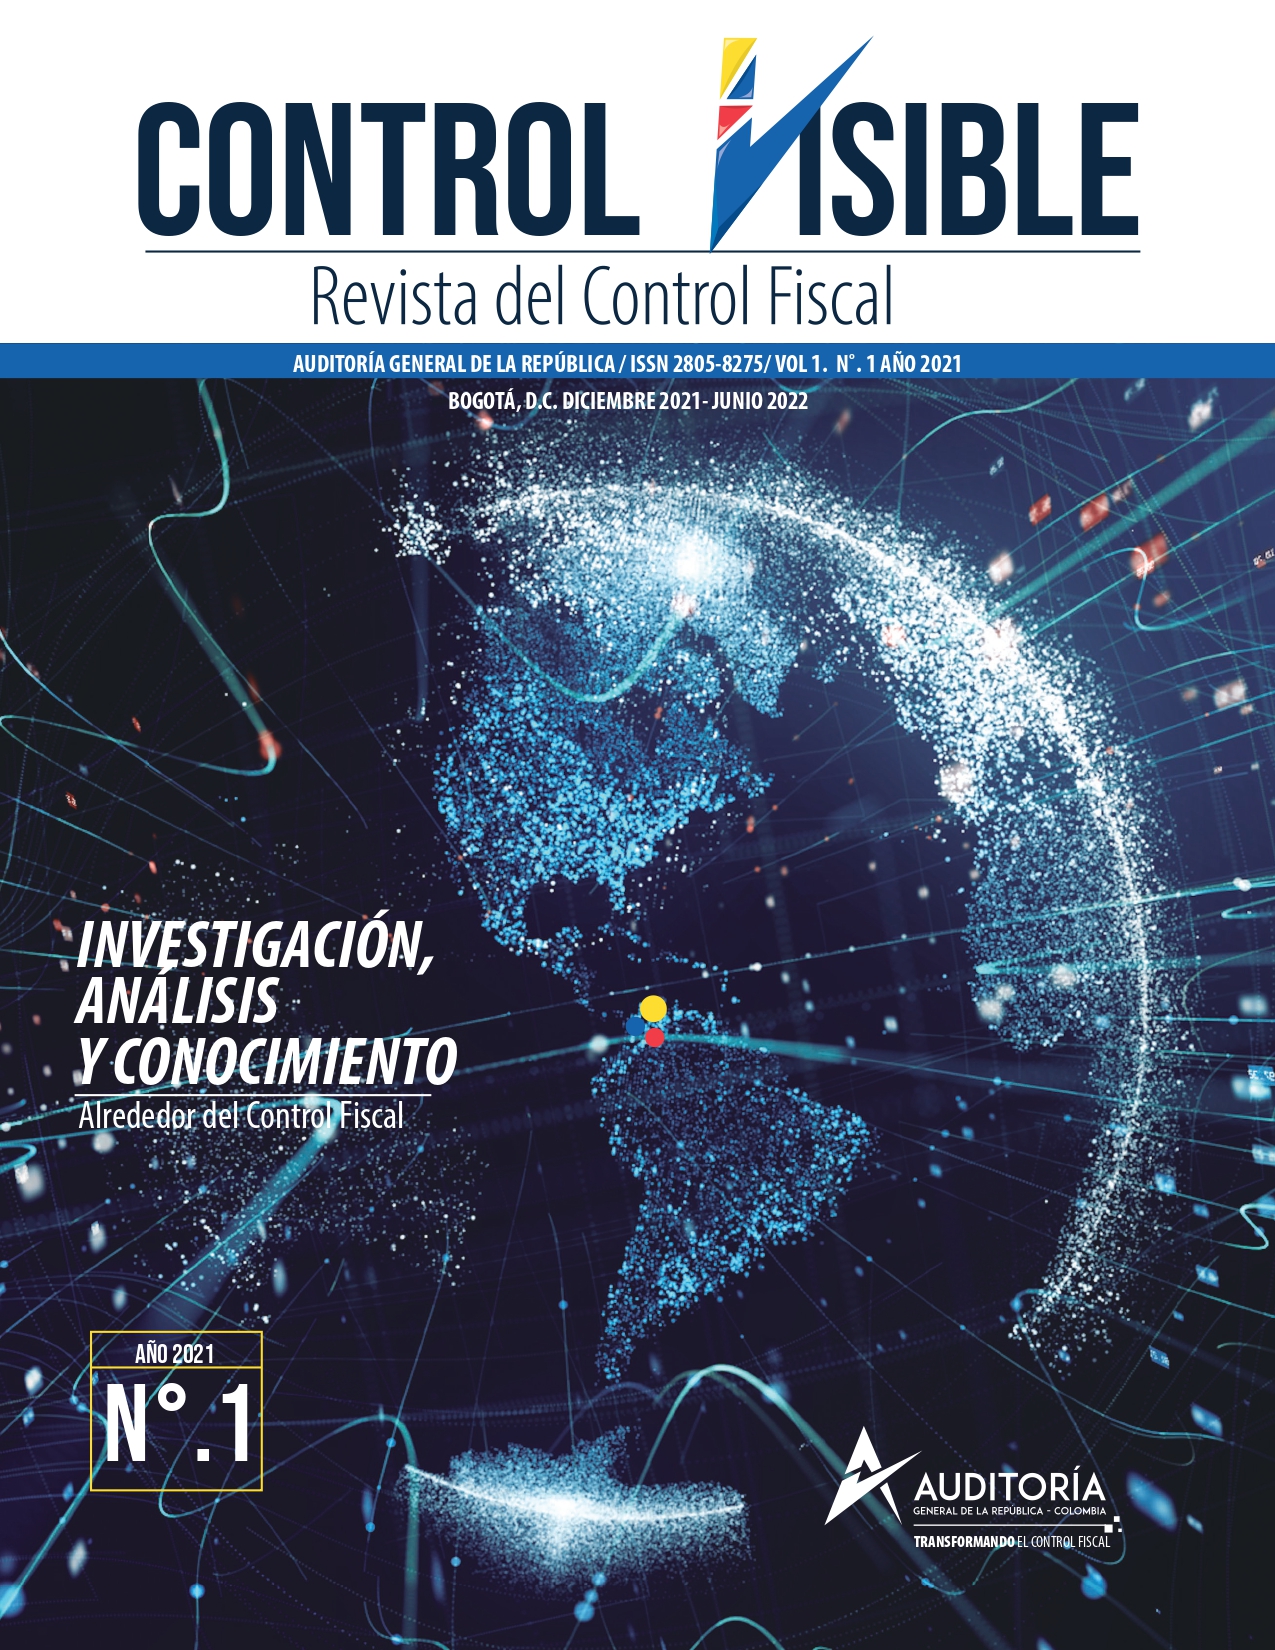 					Ver Núm. 1 (2021): Control Visible - Revista de Control Fiscal
				